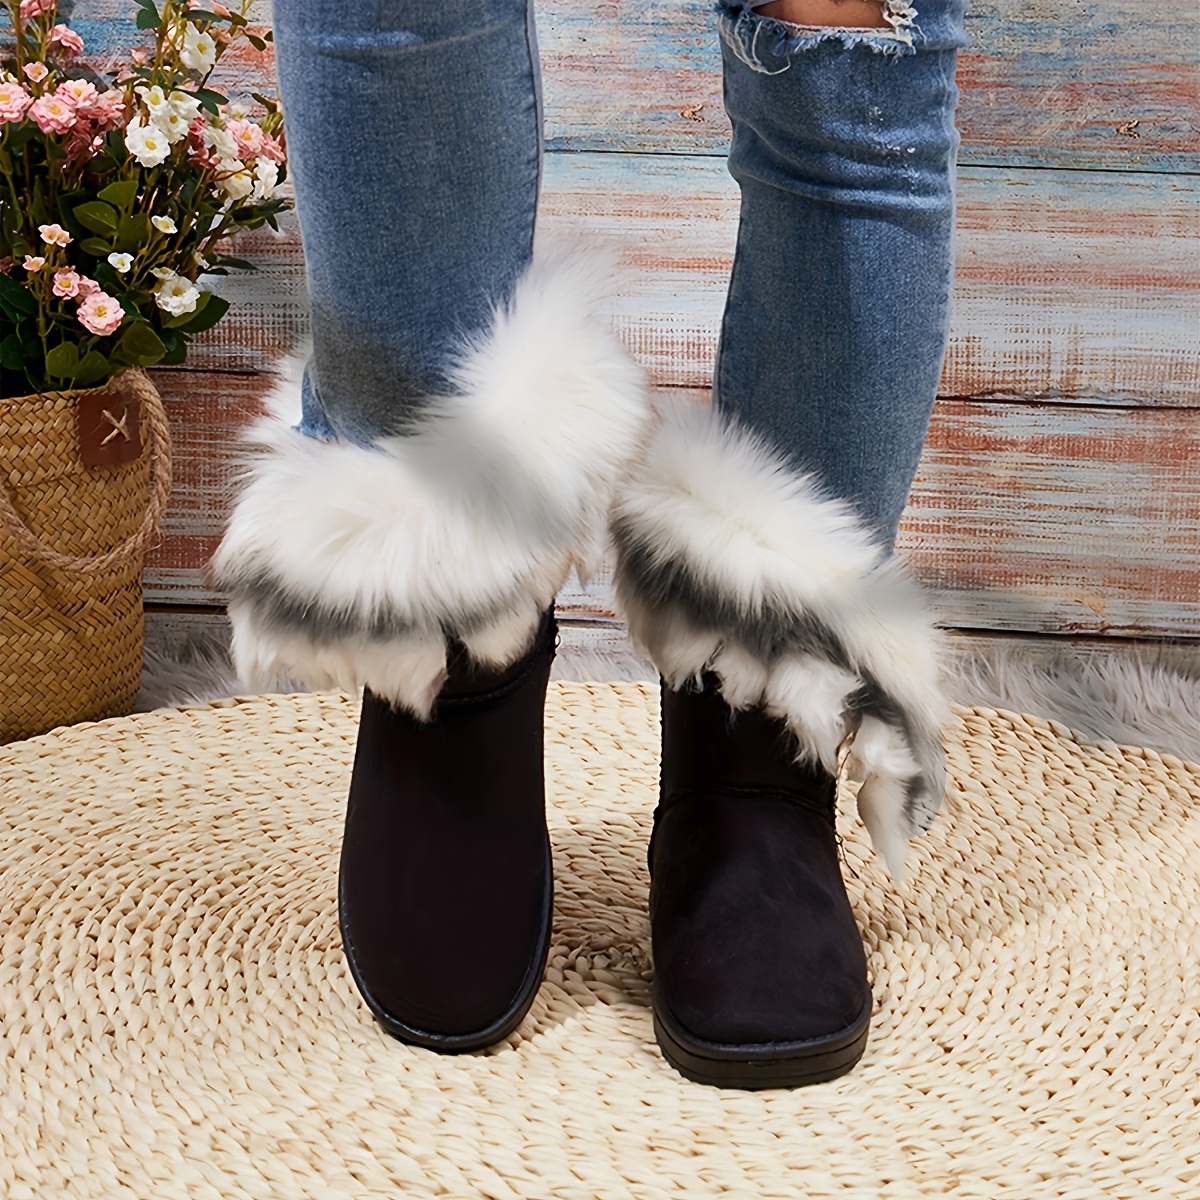 vrouwen s warme sneeuwlaarzen mode nepbont slip on laarzen